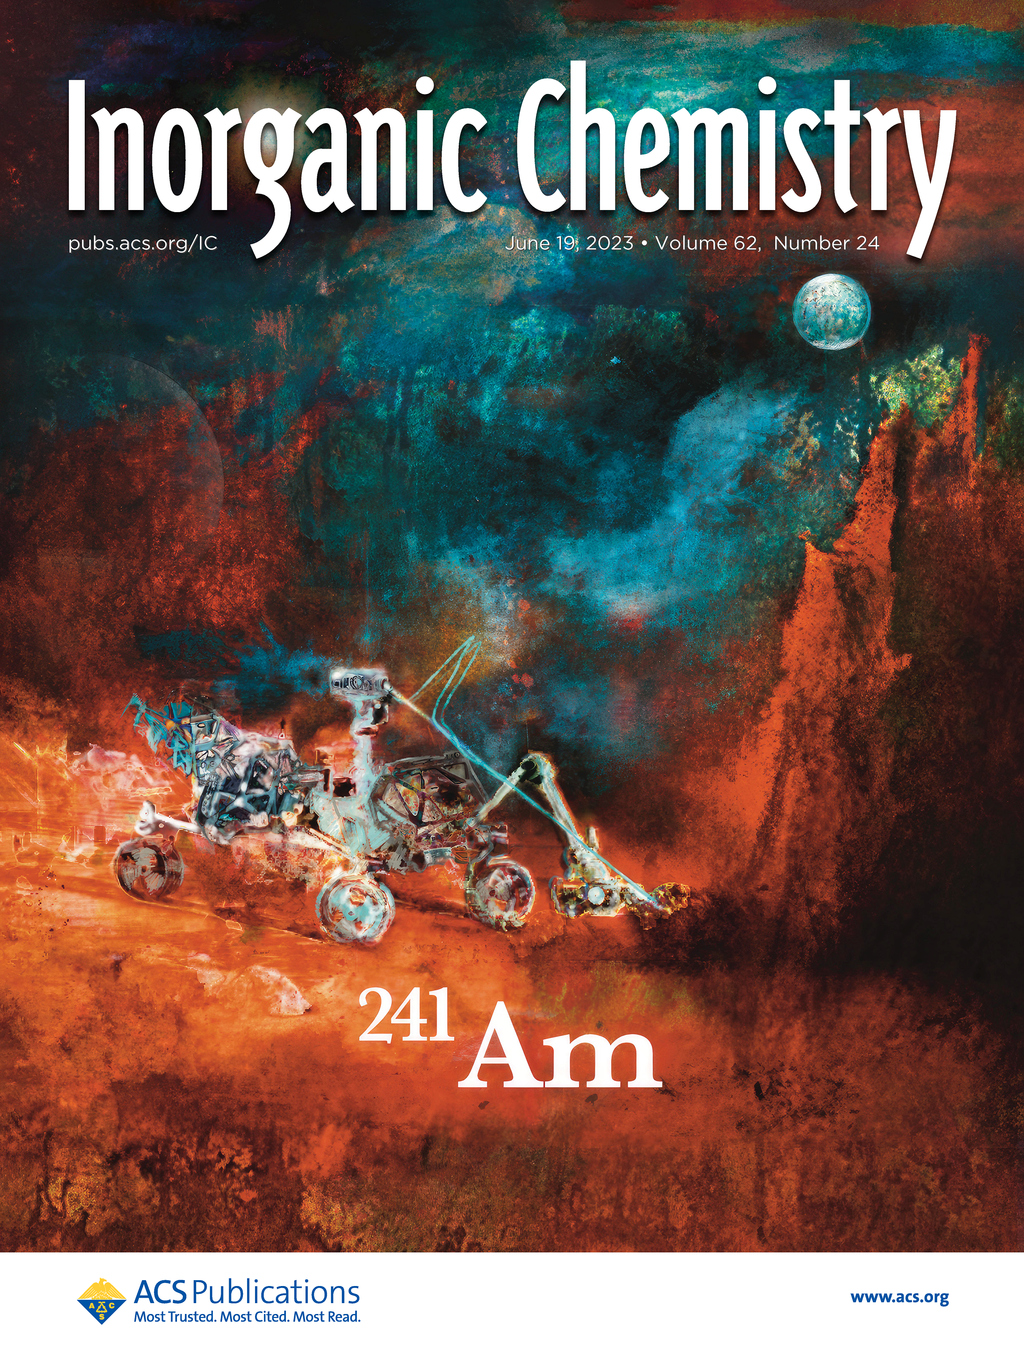 Cover of Inorganic Chemistry June 2023 